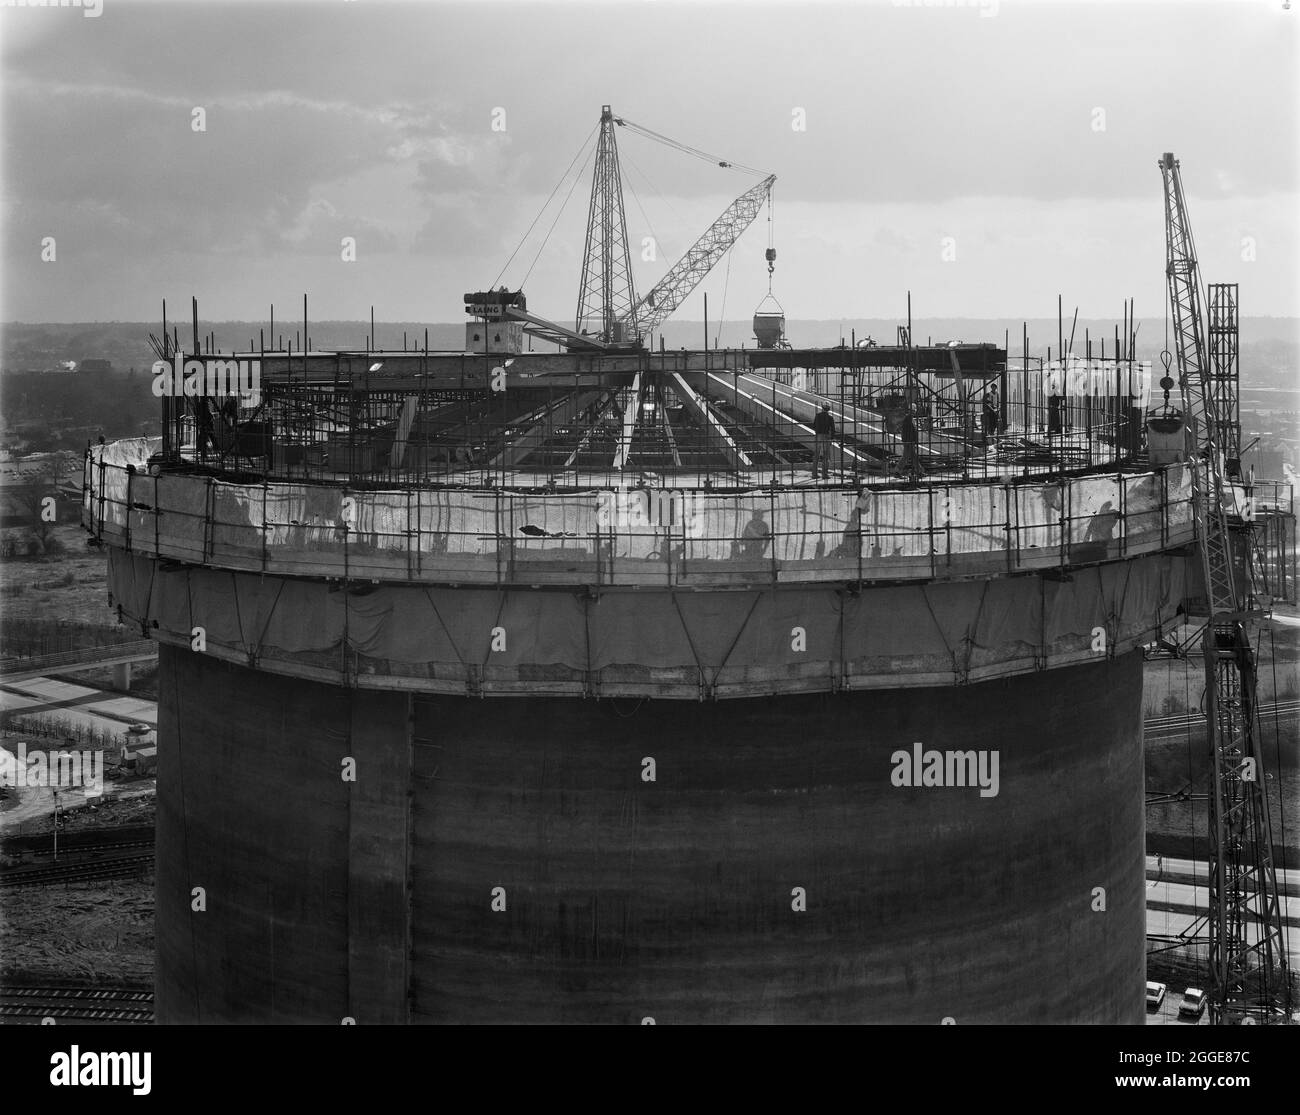 Vista della piattaforma di lavoro con gru centrale in cima a un silo in costruzione presso la fabbrica di barbabietole da zucchero Bury St Edmunds, che mostra la struttura del tetto conico. Una fabbrica di zucchero iniziò ad operare a Bury St Edmunds nel 1924. Nel 1972 Laing ha ricevuto il contratto per la costruzione di quattro silos di zucchero e di un nuovo impianto di trattamento delle barbabietole per la British Sugar Corporation a Bury St Edmunds, e nel 1981/82 è stato costruito un ulteriore silo di zucchero con capacità di 25,000 tonnellate. Foto Stock